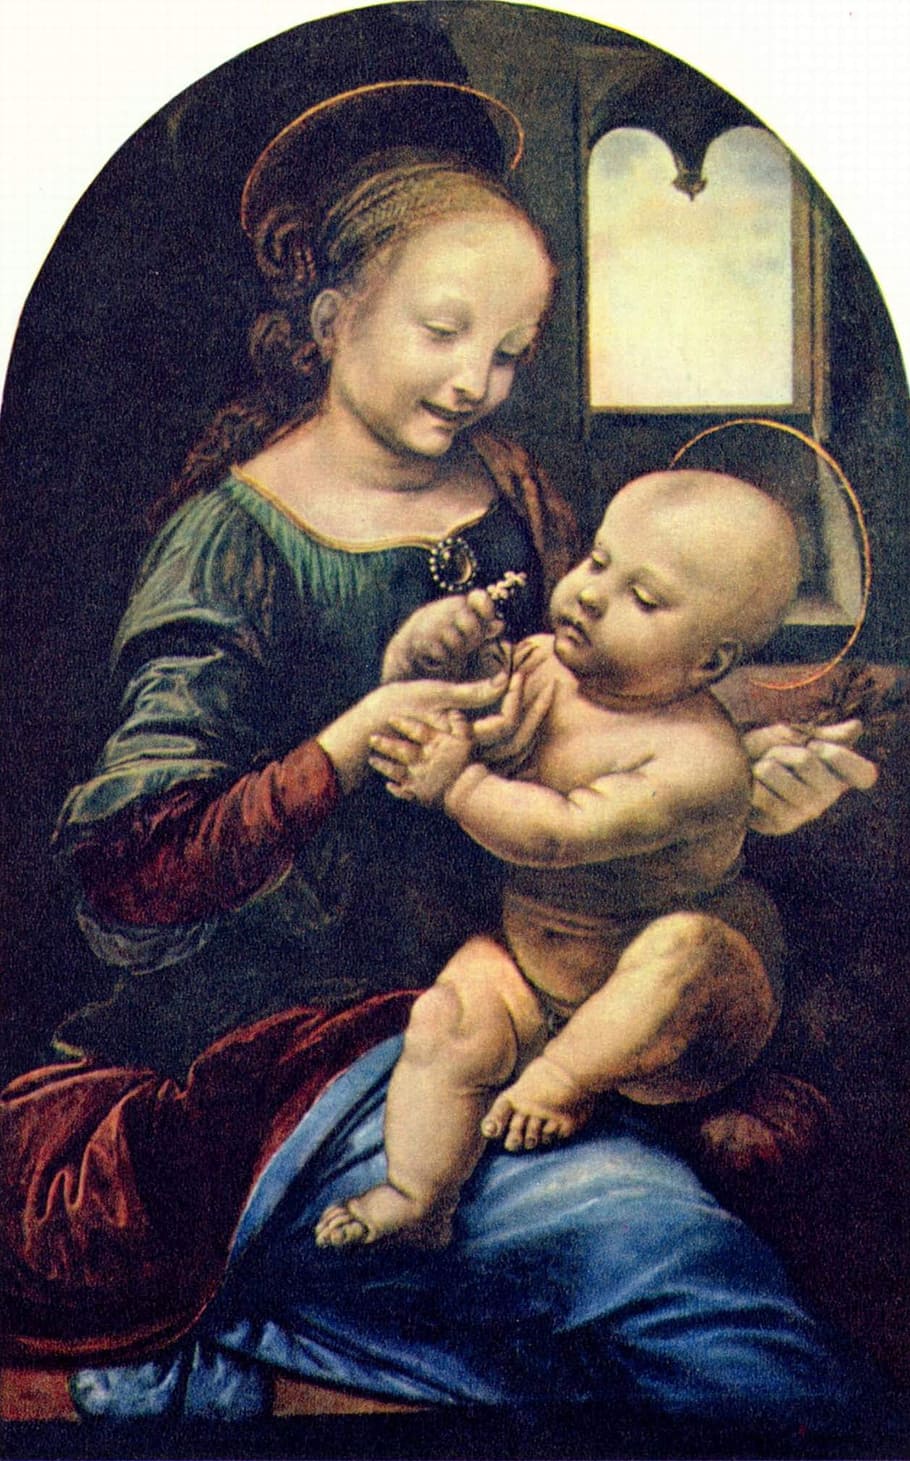 pintura religiosa, la virgen y el niño, leonardo de vinci, caldera y jesús, 1478-1482, óleo sobre madera, pintura juvenil leonardo, madre e hijo, emoción, cristo